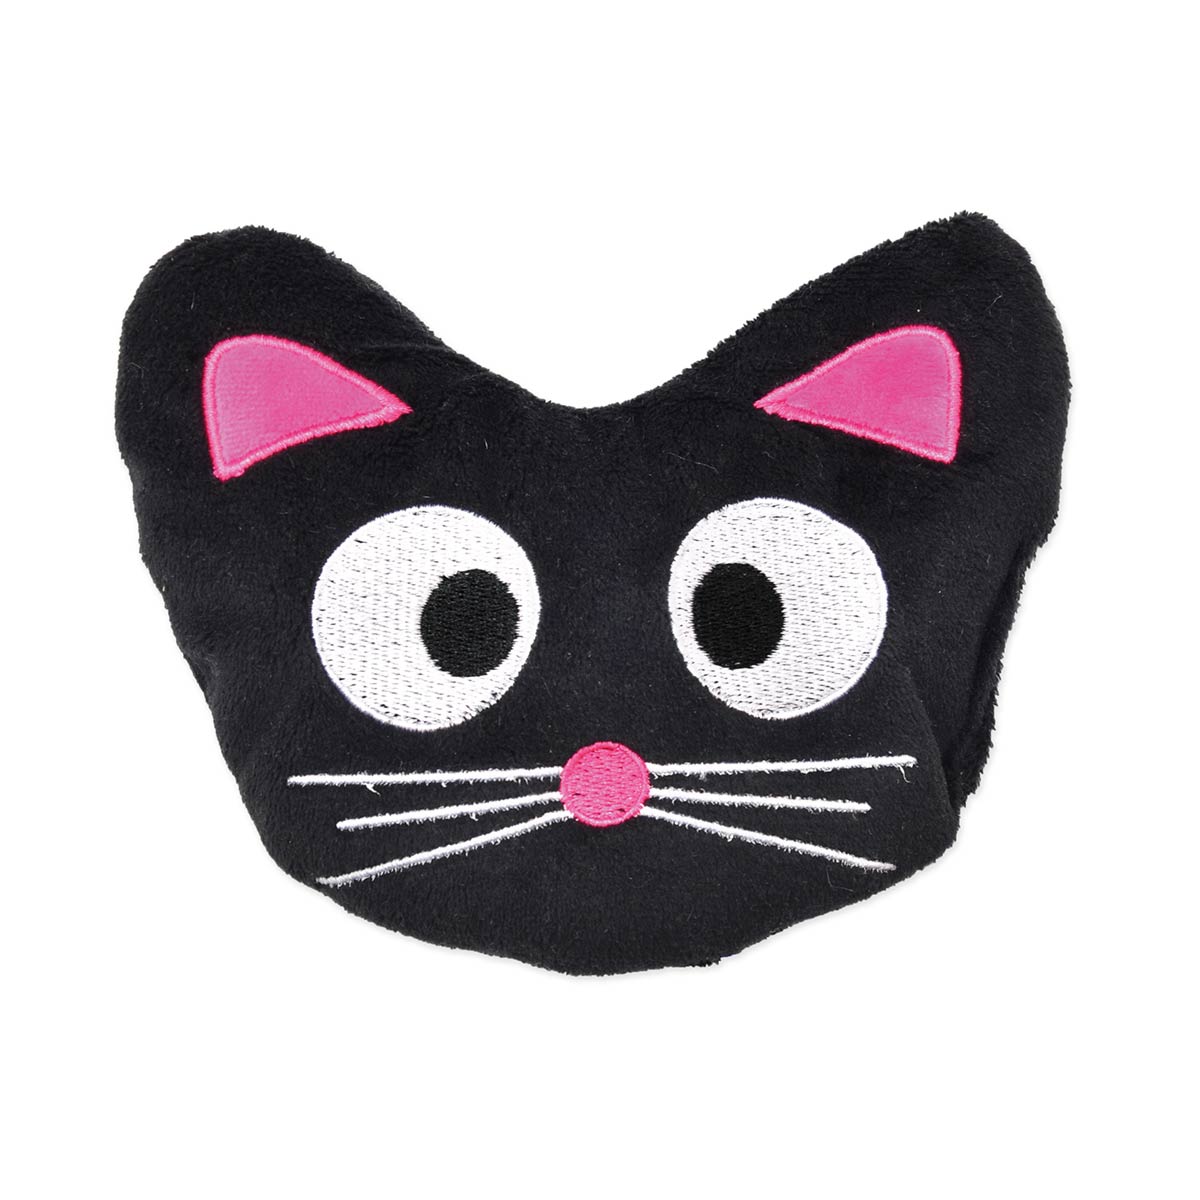 Aumüller polštářek pro kočky ve tvaru kočičí hlavy Blacky se špaldou a kozlíkem